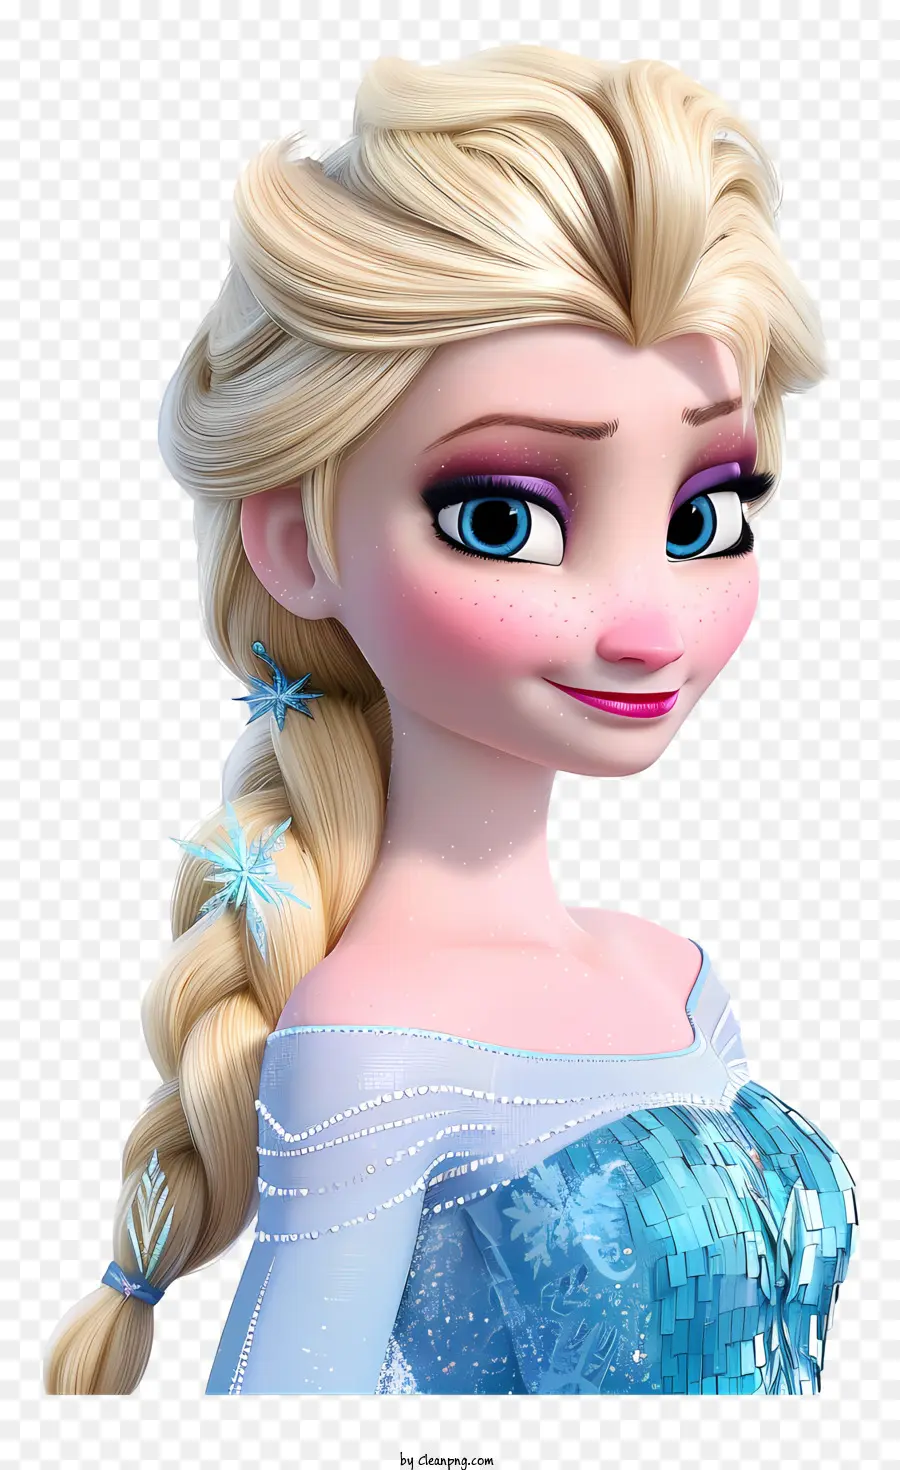 Elsa - Elsa Cartoon Charakter mit blonden Haaren